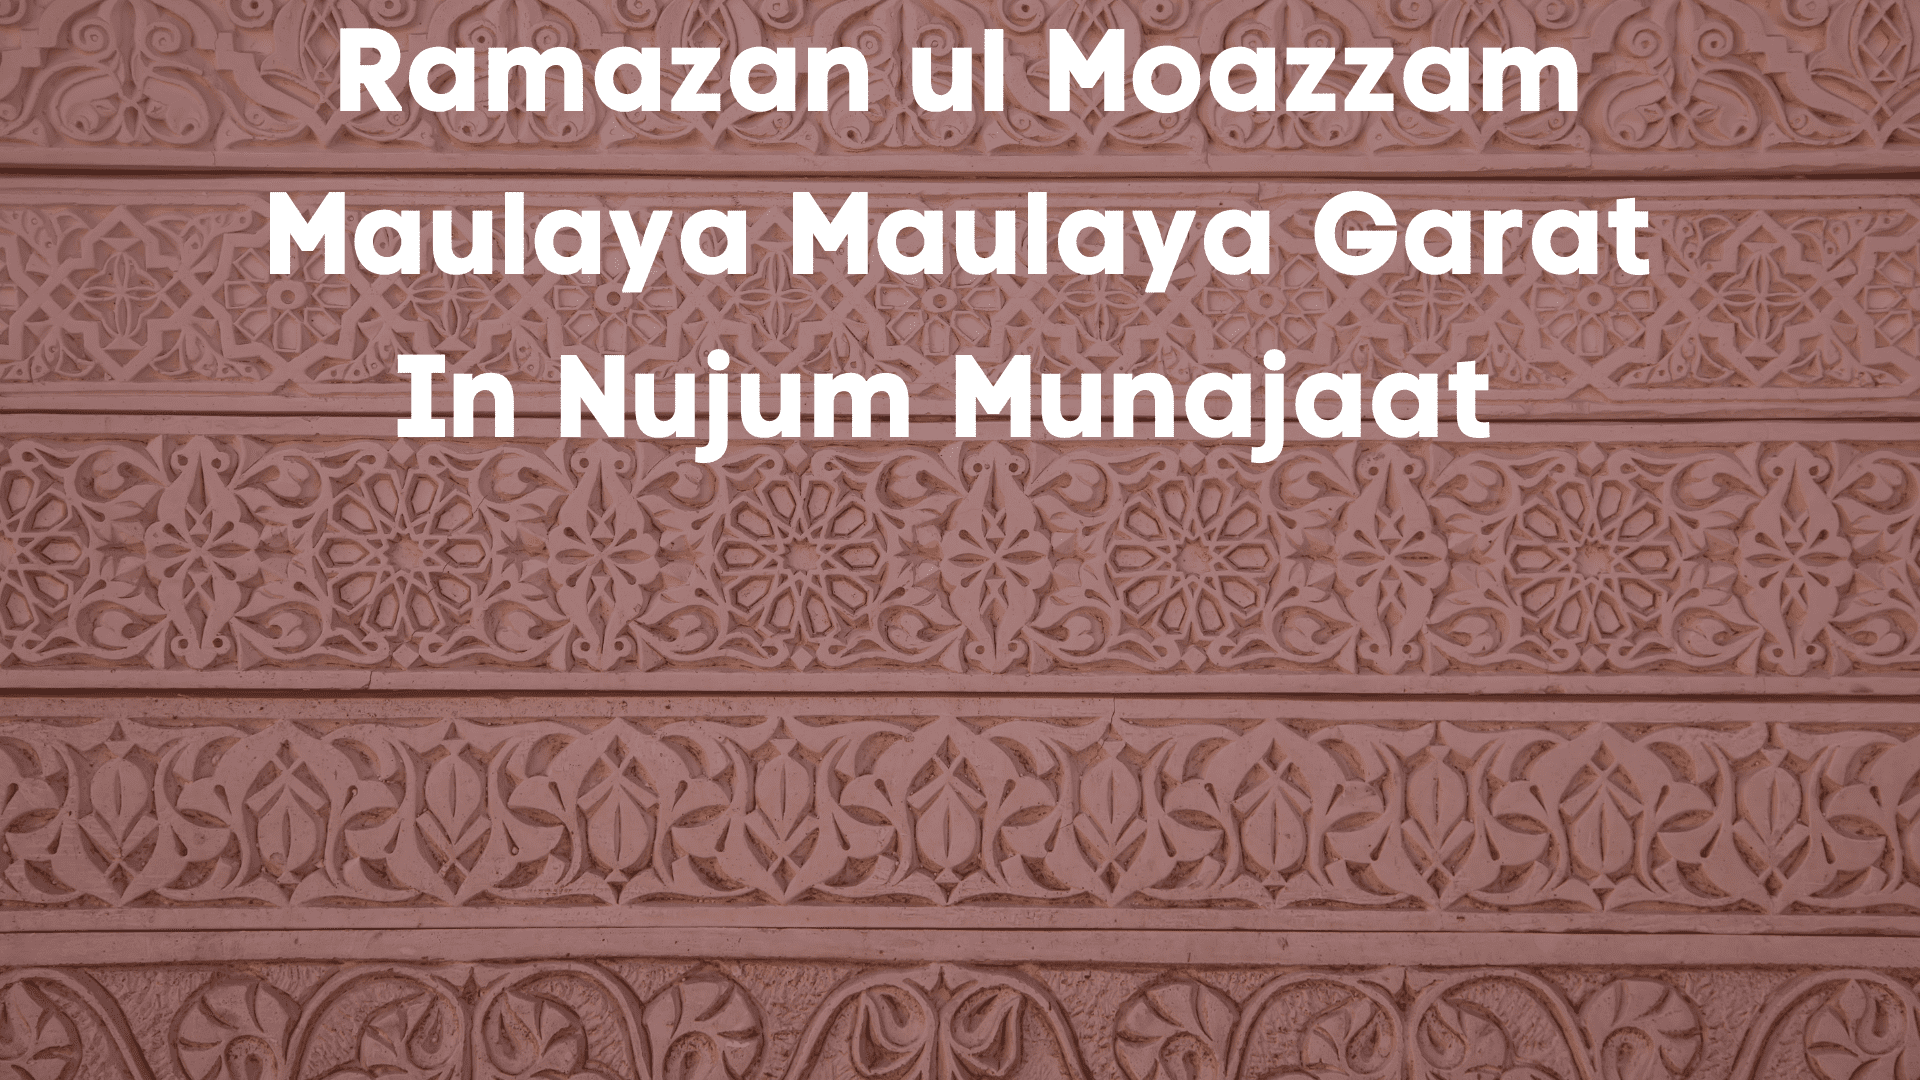 Ramazan ul Moazzam Maulaya Maulaya Garat In Nujum Munajaat